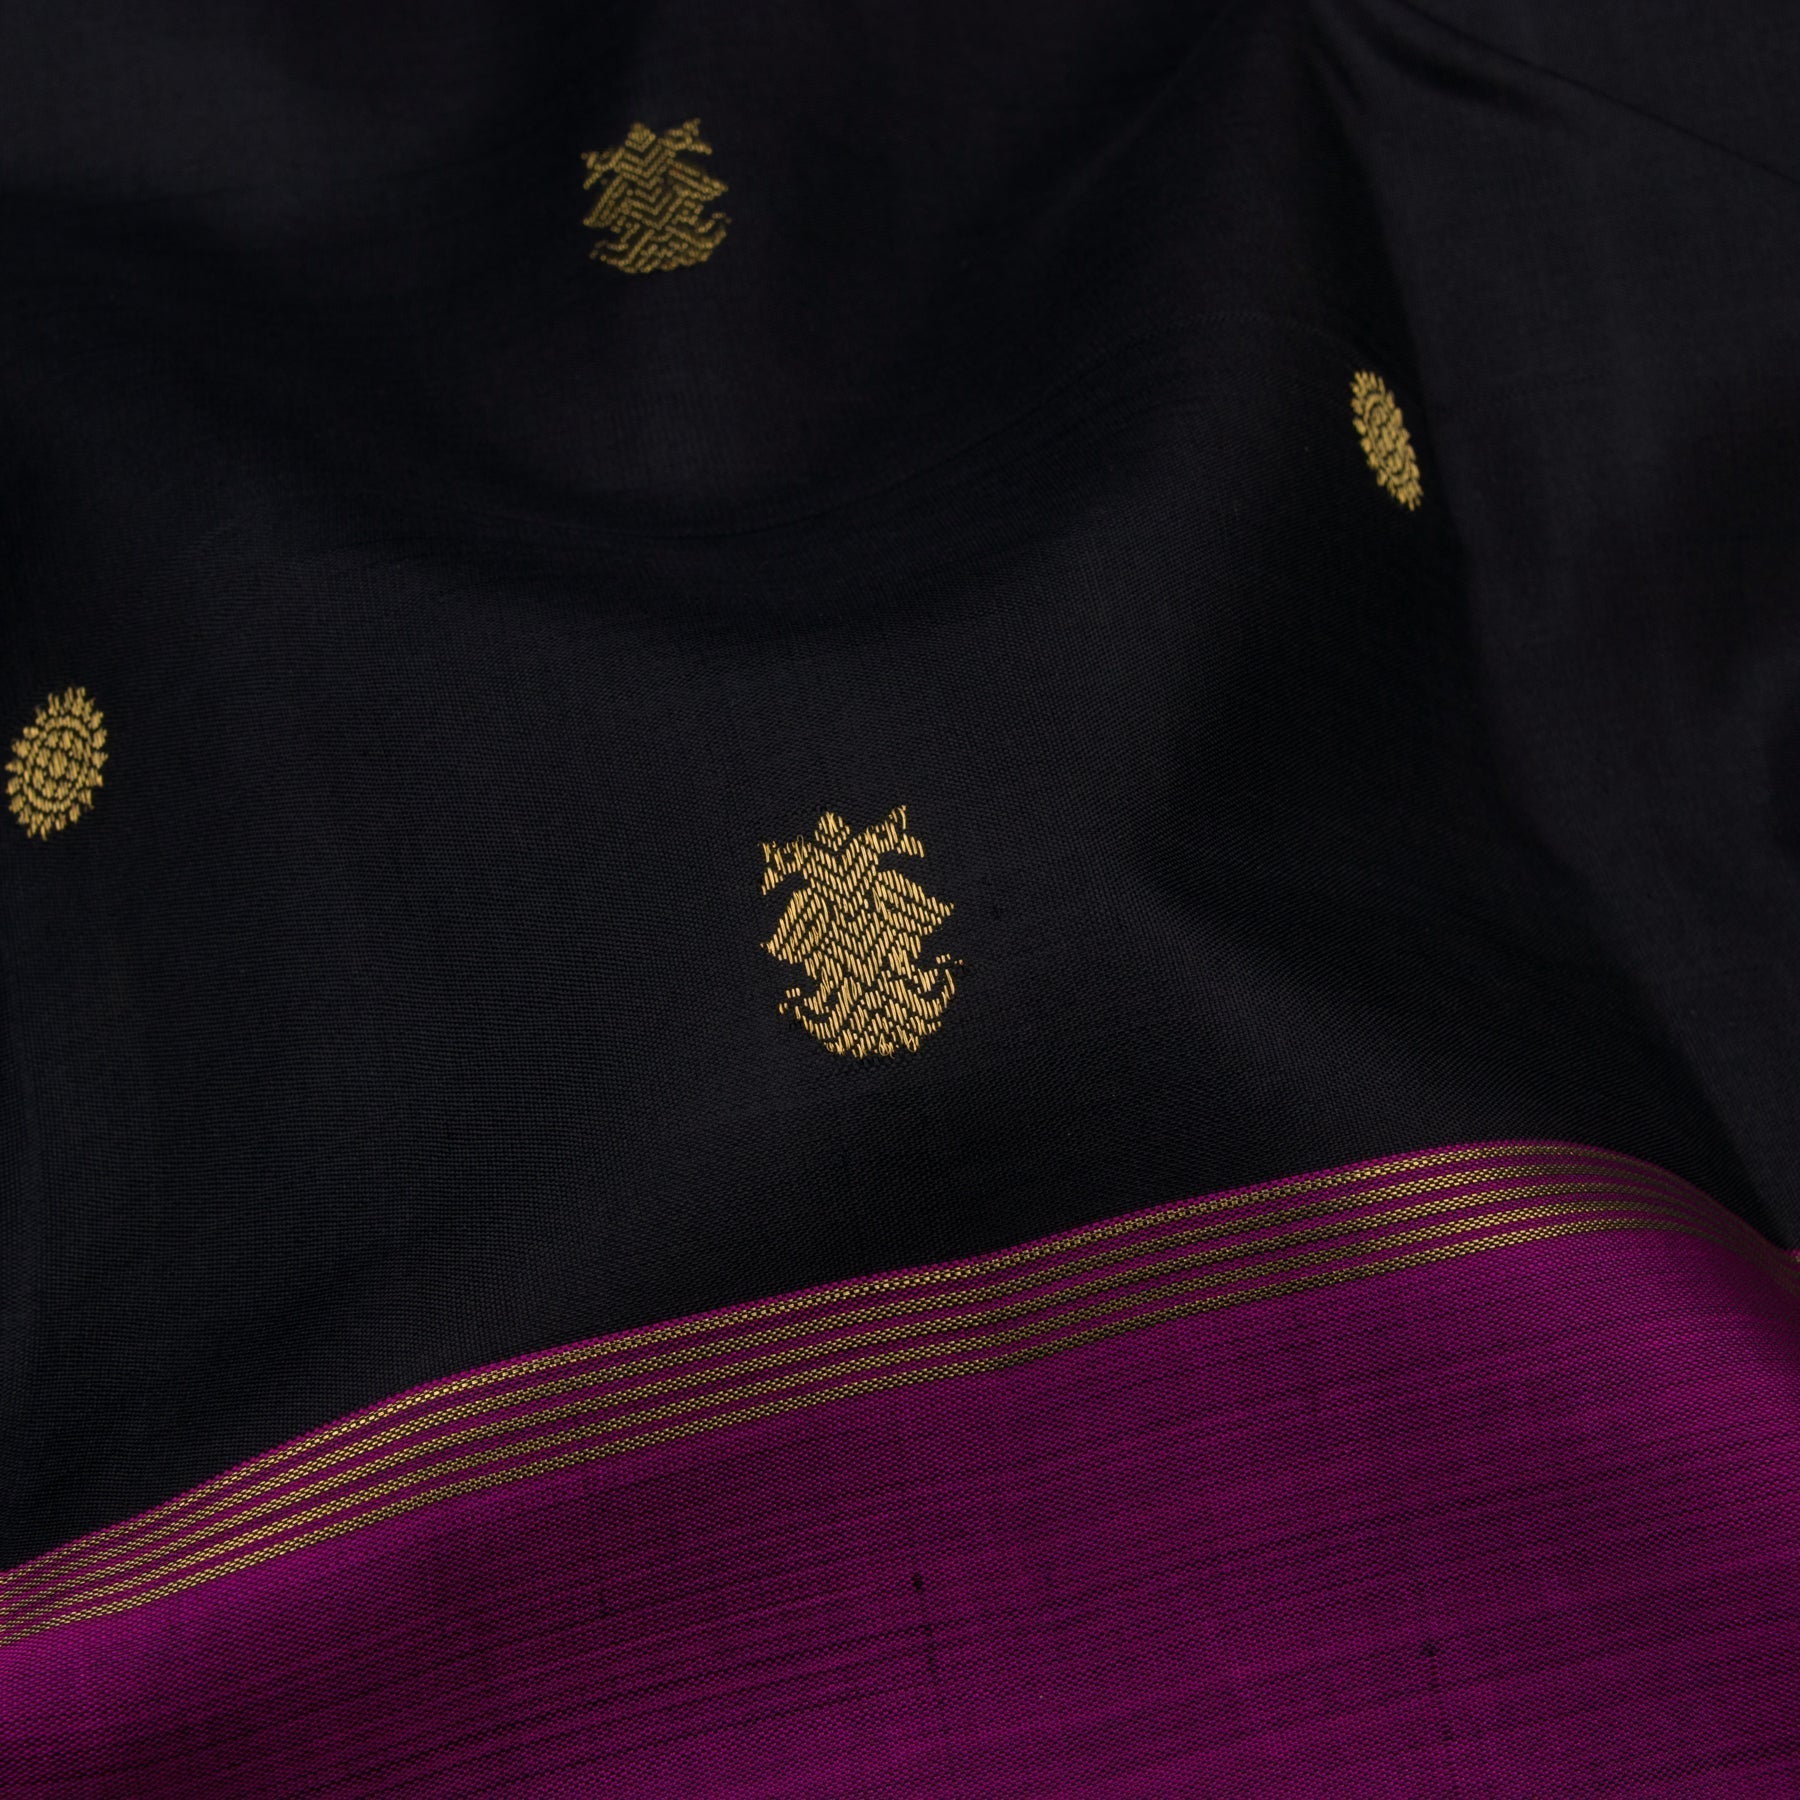 Kanakavalli Kanjivaram Silk Sari 22-110-HS001-04988 - Fabric View